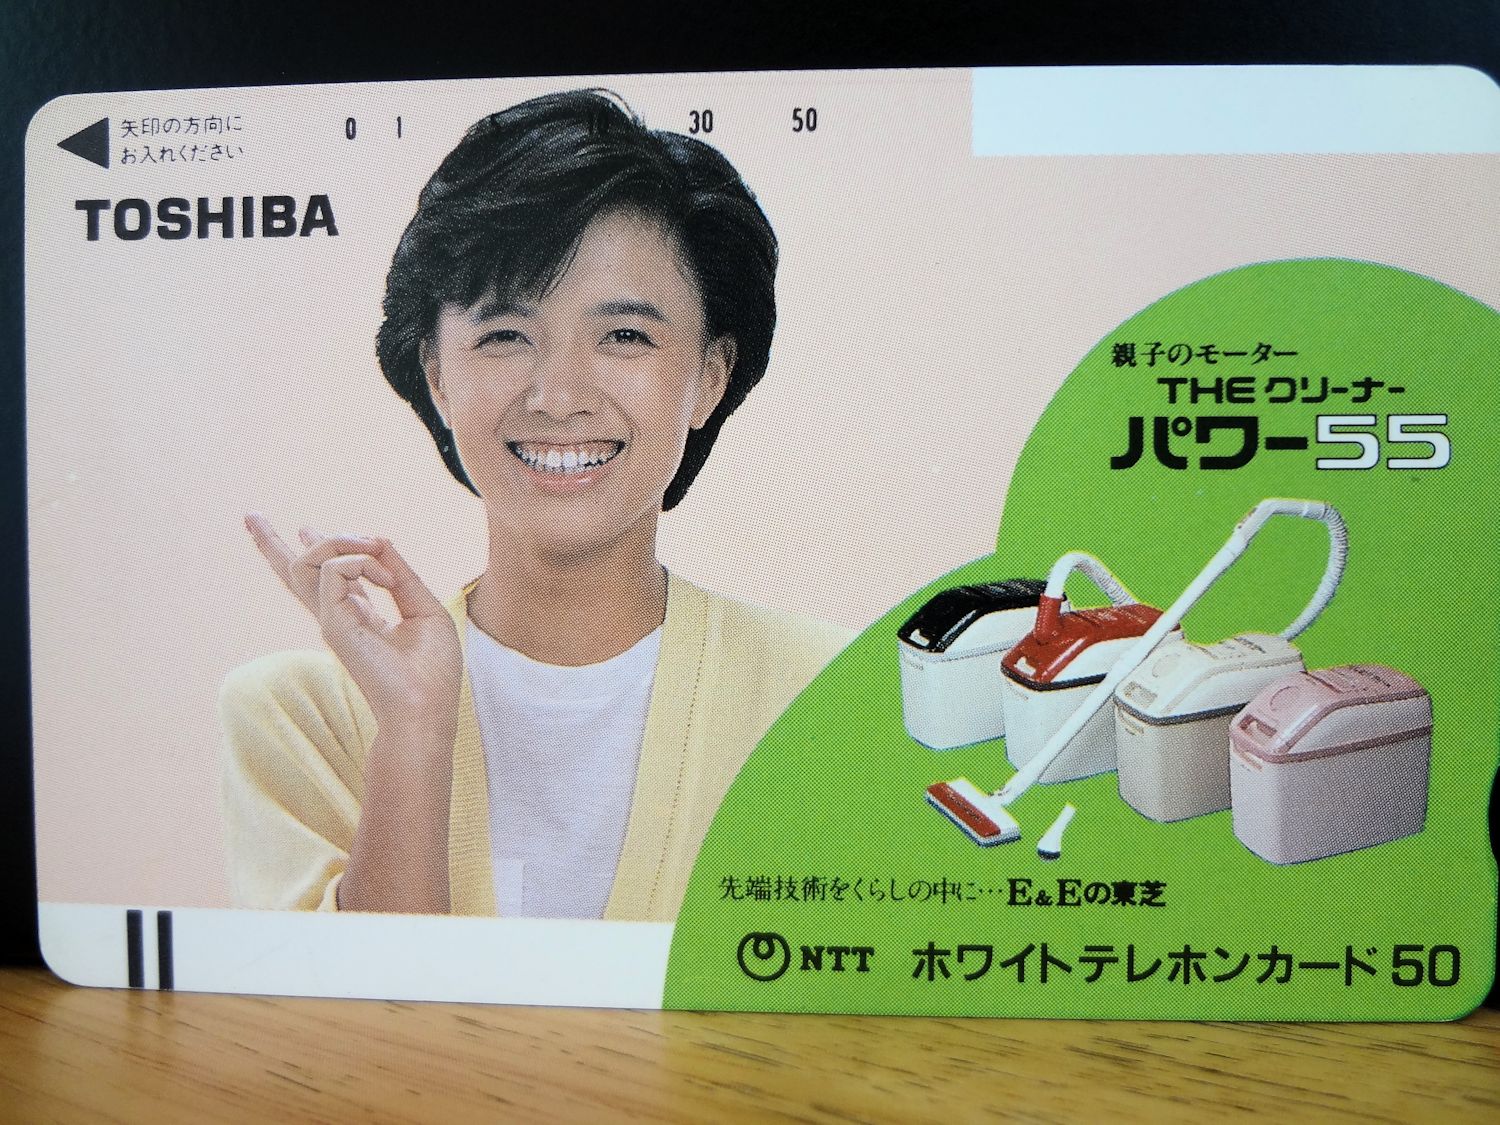 テレホンカード アイドル テレカ 榊原郁恵 ネオパラ RS019-0001 - プリペイドカード